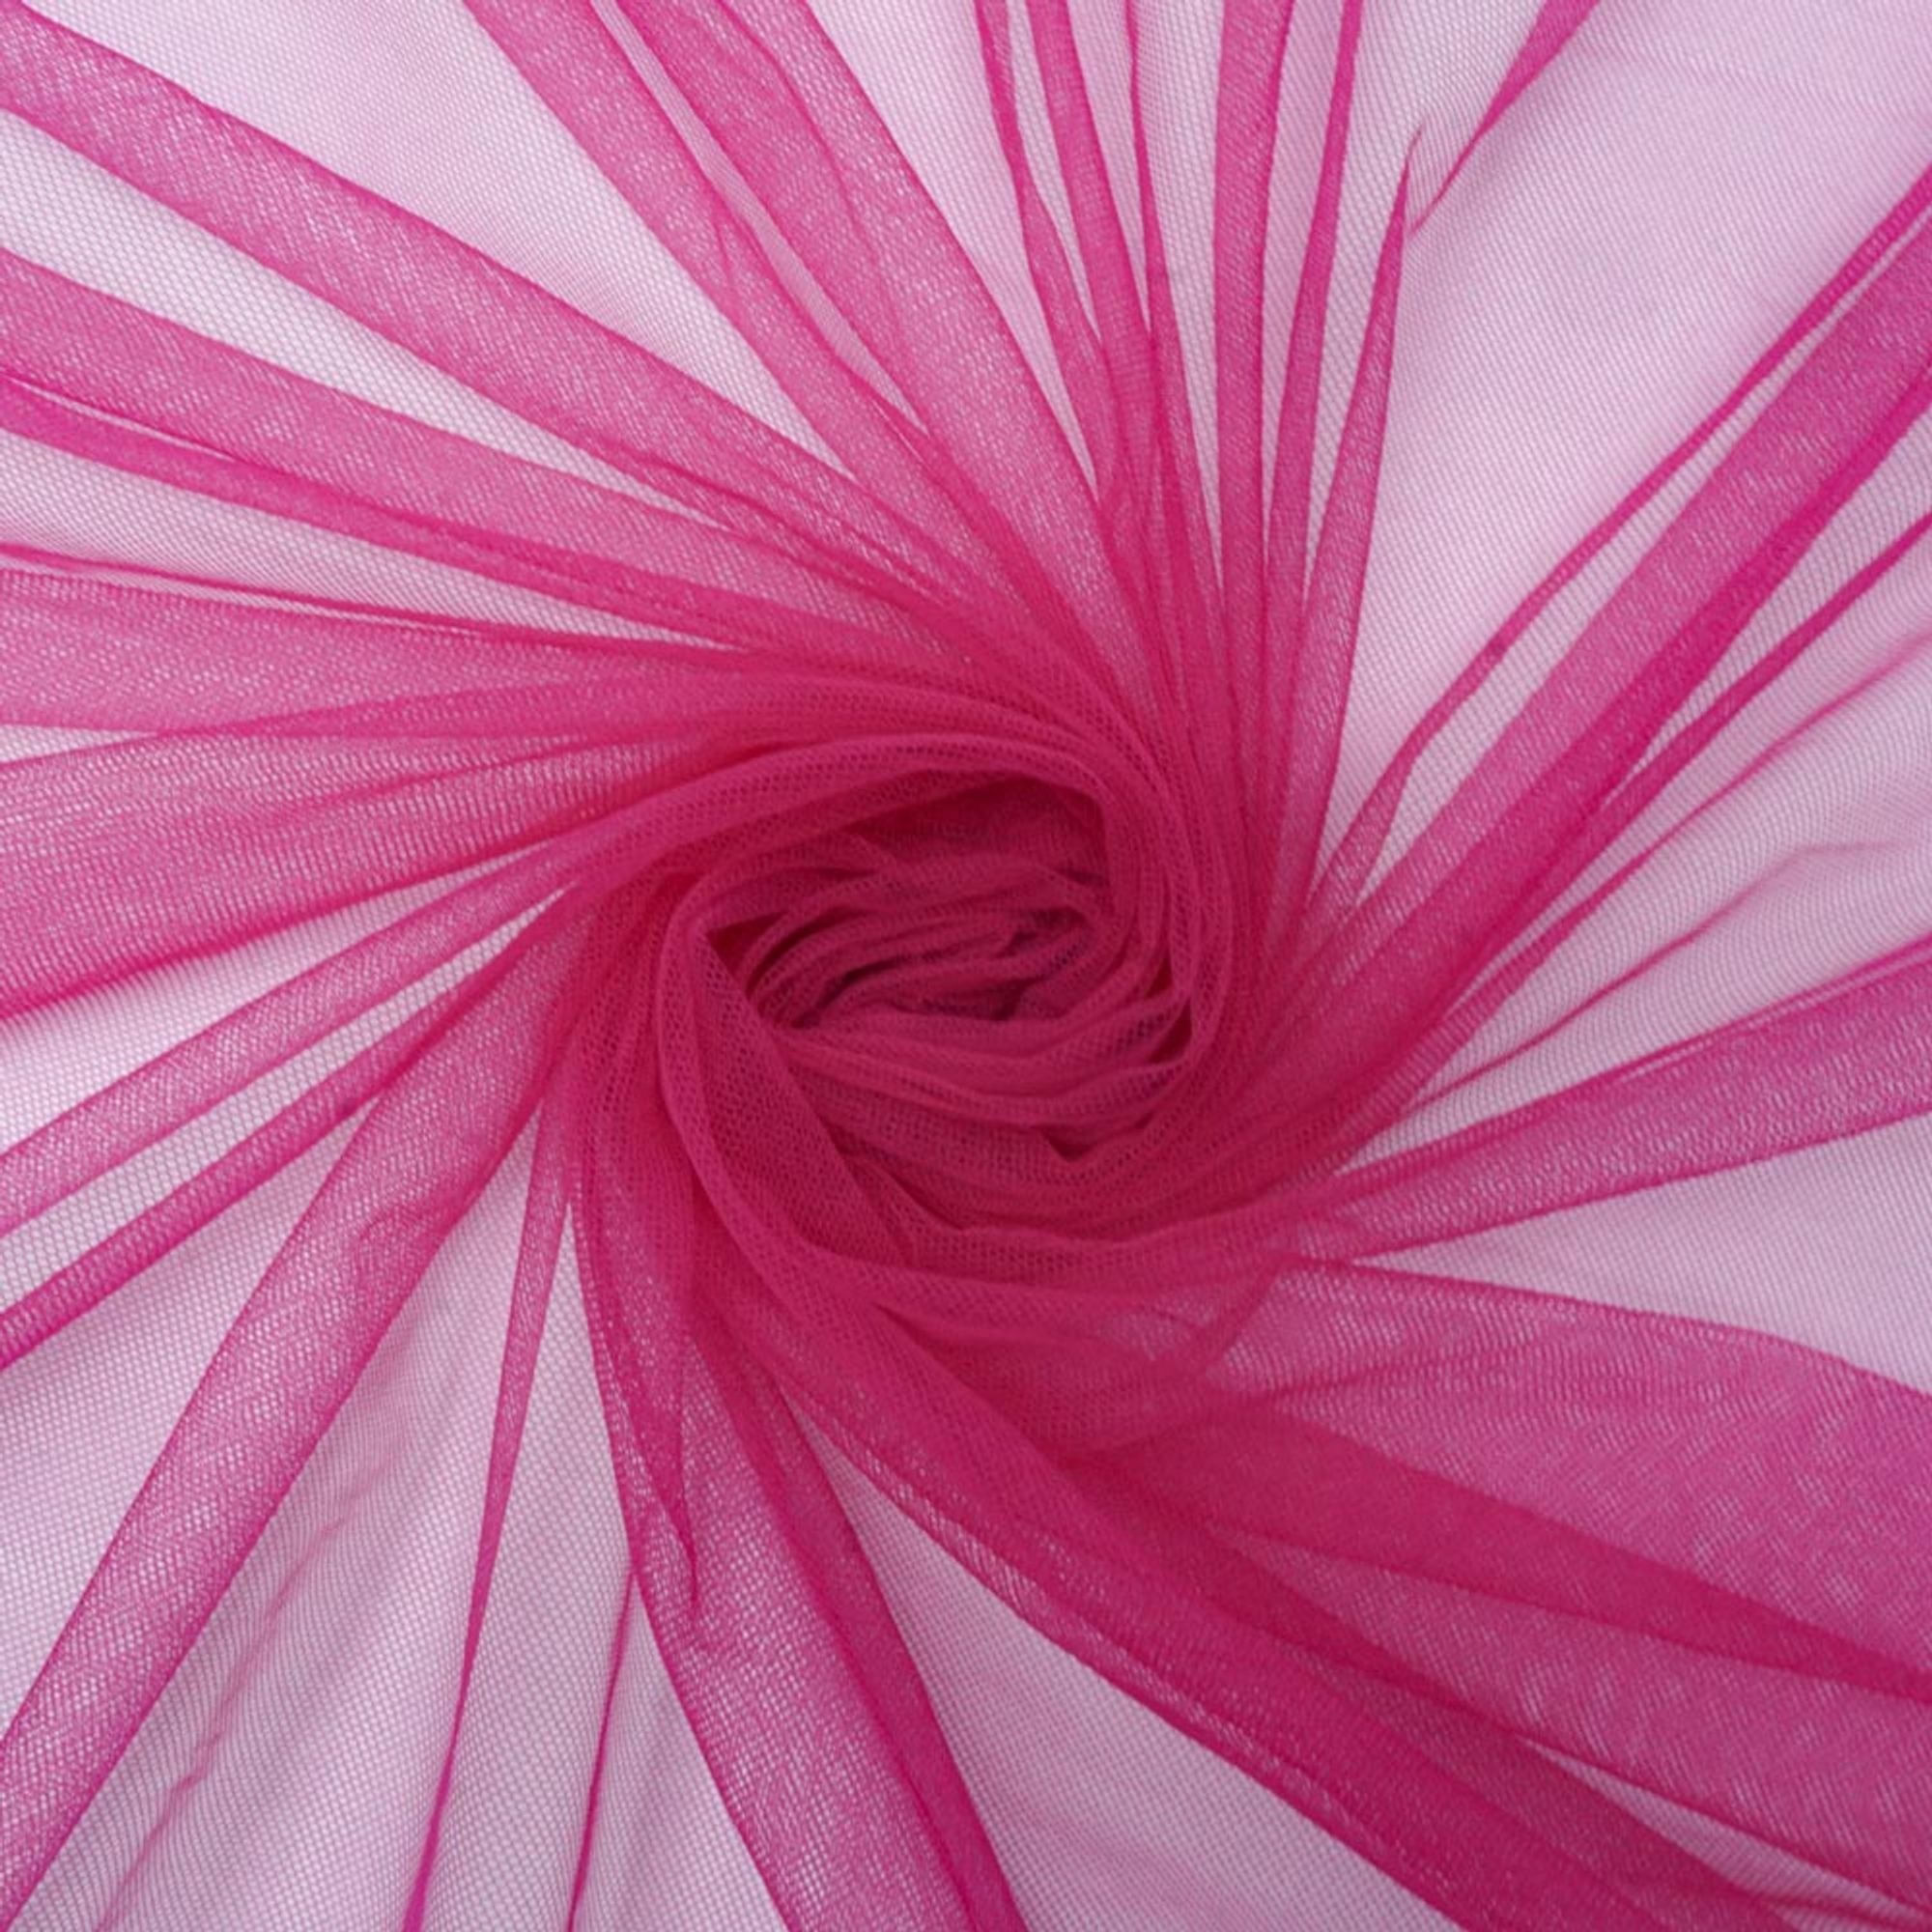 Tecido tule ilusione pink und 90cmx160cm